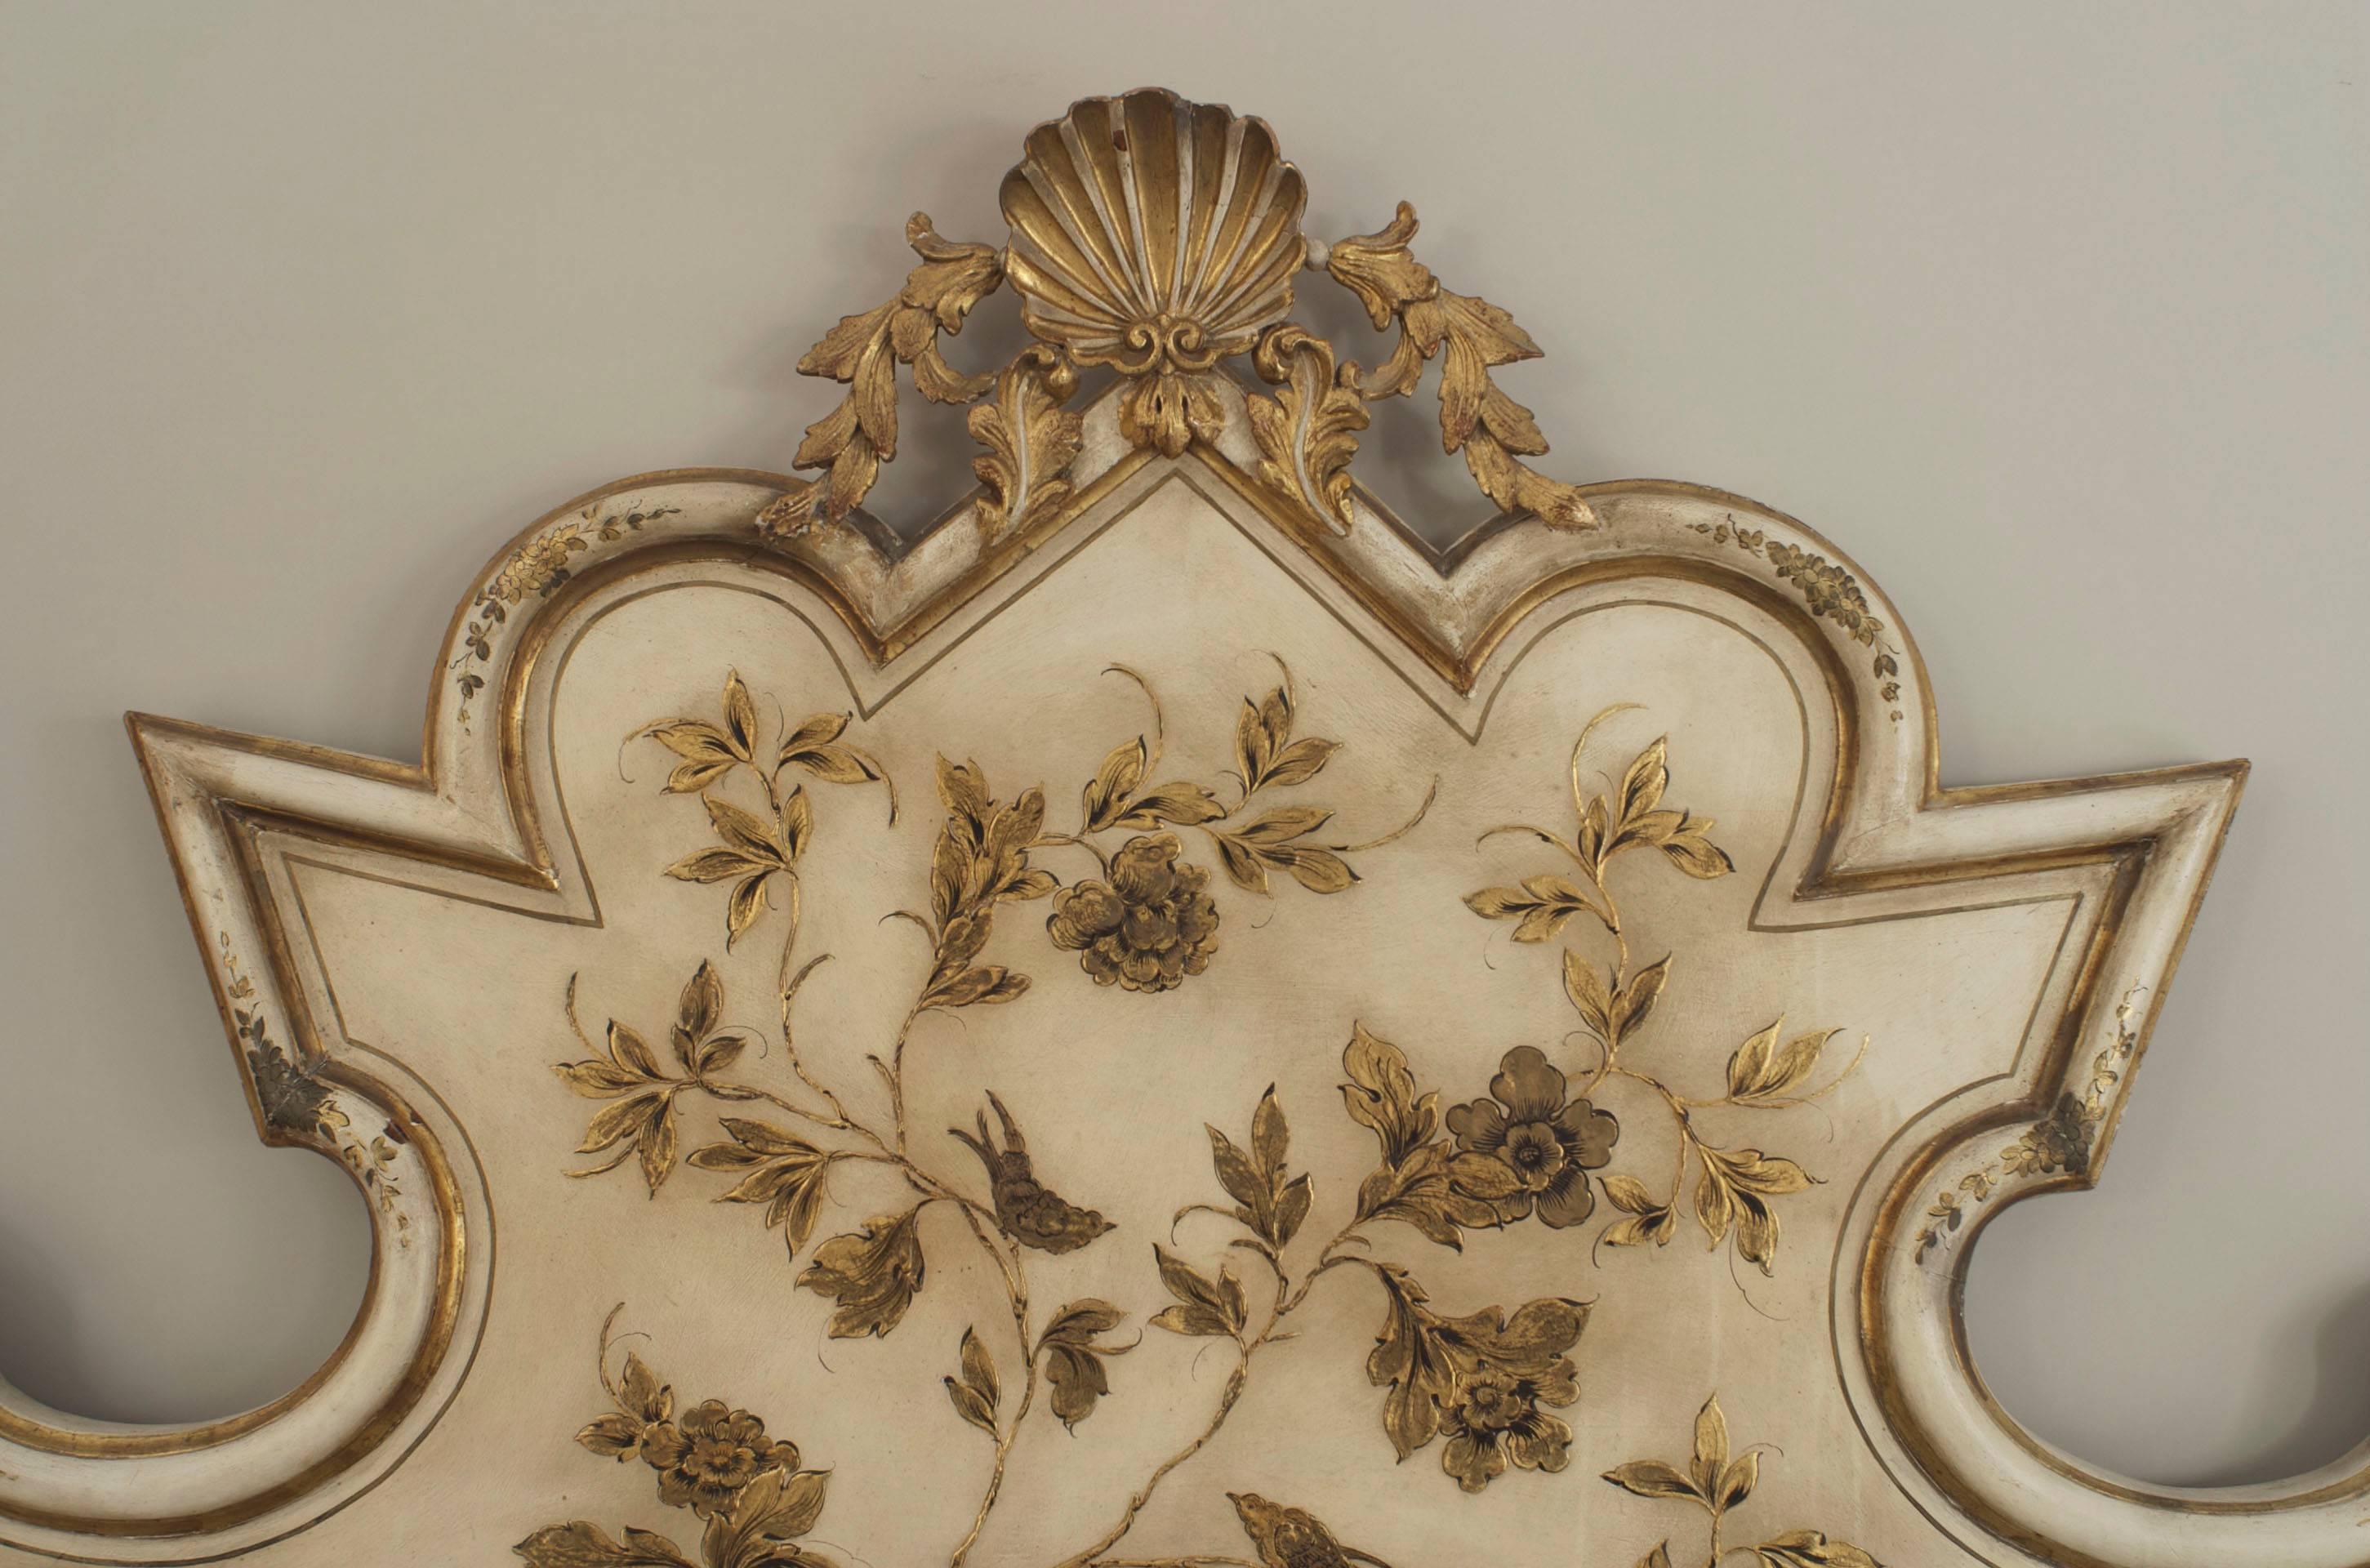 Tête de lit de style vénitien italien (années 1950) de forme antique, peinte en crème, avec un décor floral doré et un fronton en forme de coquille sculpté et doré (inclus : tête de lit seulement).
